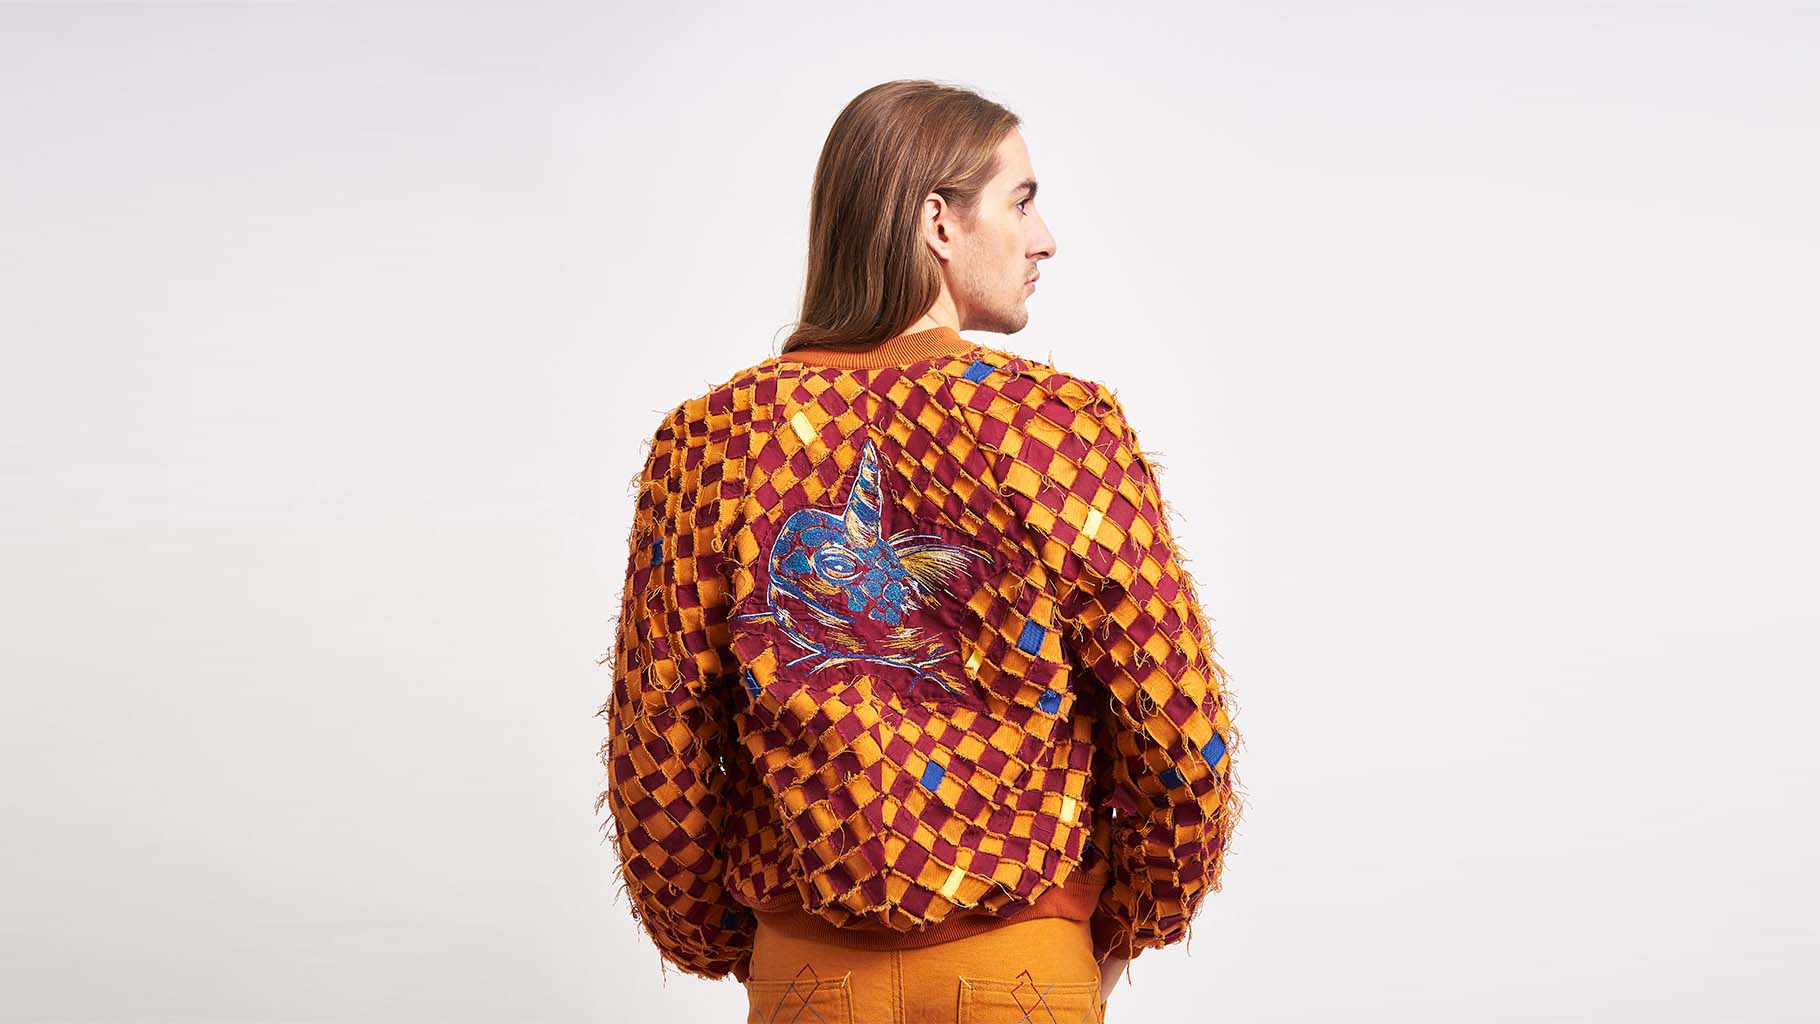 Turtlehorn – Kleding gemaakt van ingezameld textiel